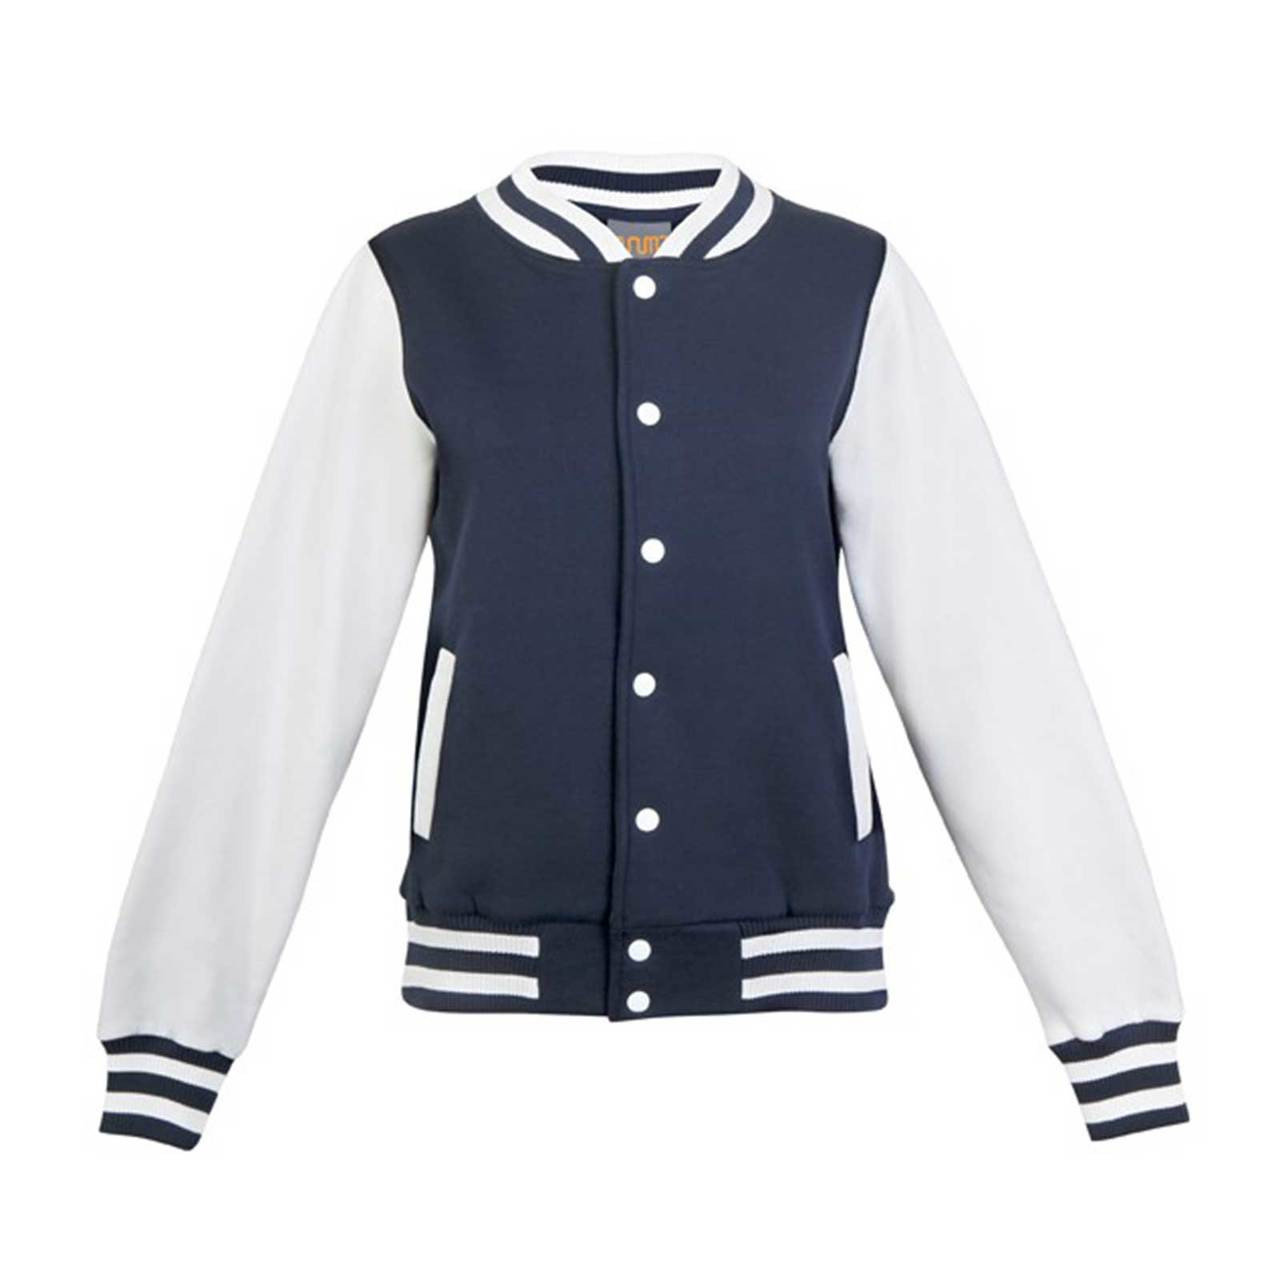 Plain Ladies & Kids Varsity Jacket | Blank Team School Uniform Australia